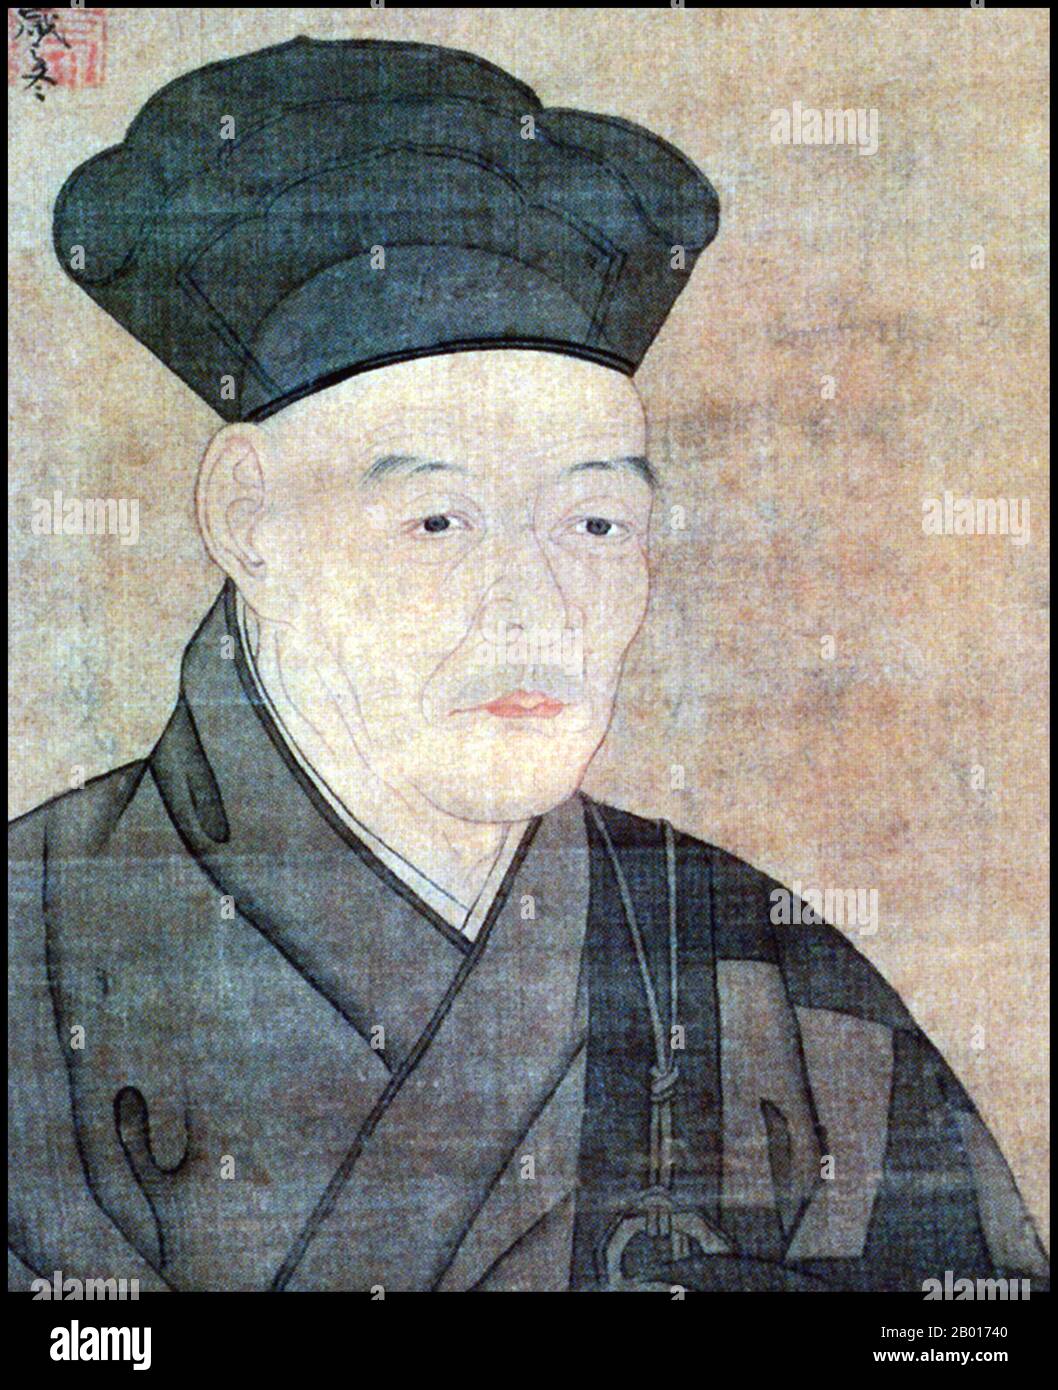 Japan: Sesshu Toyo (1460. - 26. August 1506), Maler aus der Muromachi-Zeit. Kopie eines Selbstporträts von 1491, 16th Jahrhundert. Sesshu Toyo, auch bekannt als Oda Toyo, Bikeisai und Unkoku, war der prominenteste japanische Meister der Tusche- und Waschmalerei aus der mittleren Muromachi-Zeit. Geboren in der Oda-Samurai-Familie, wurde er zum Rinzai-Zen-buddhistischen Priester erzogen. Sein Talent für Kunst zeigte sich jedoch schon in jungen Jahren, und er wurde schließlich zu einem der größten japanischen Künstler seiner Zeit, der in ganz Japan und China weithin verehrt wurde. Stockfoto